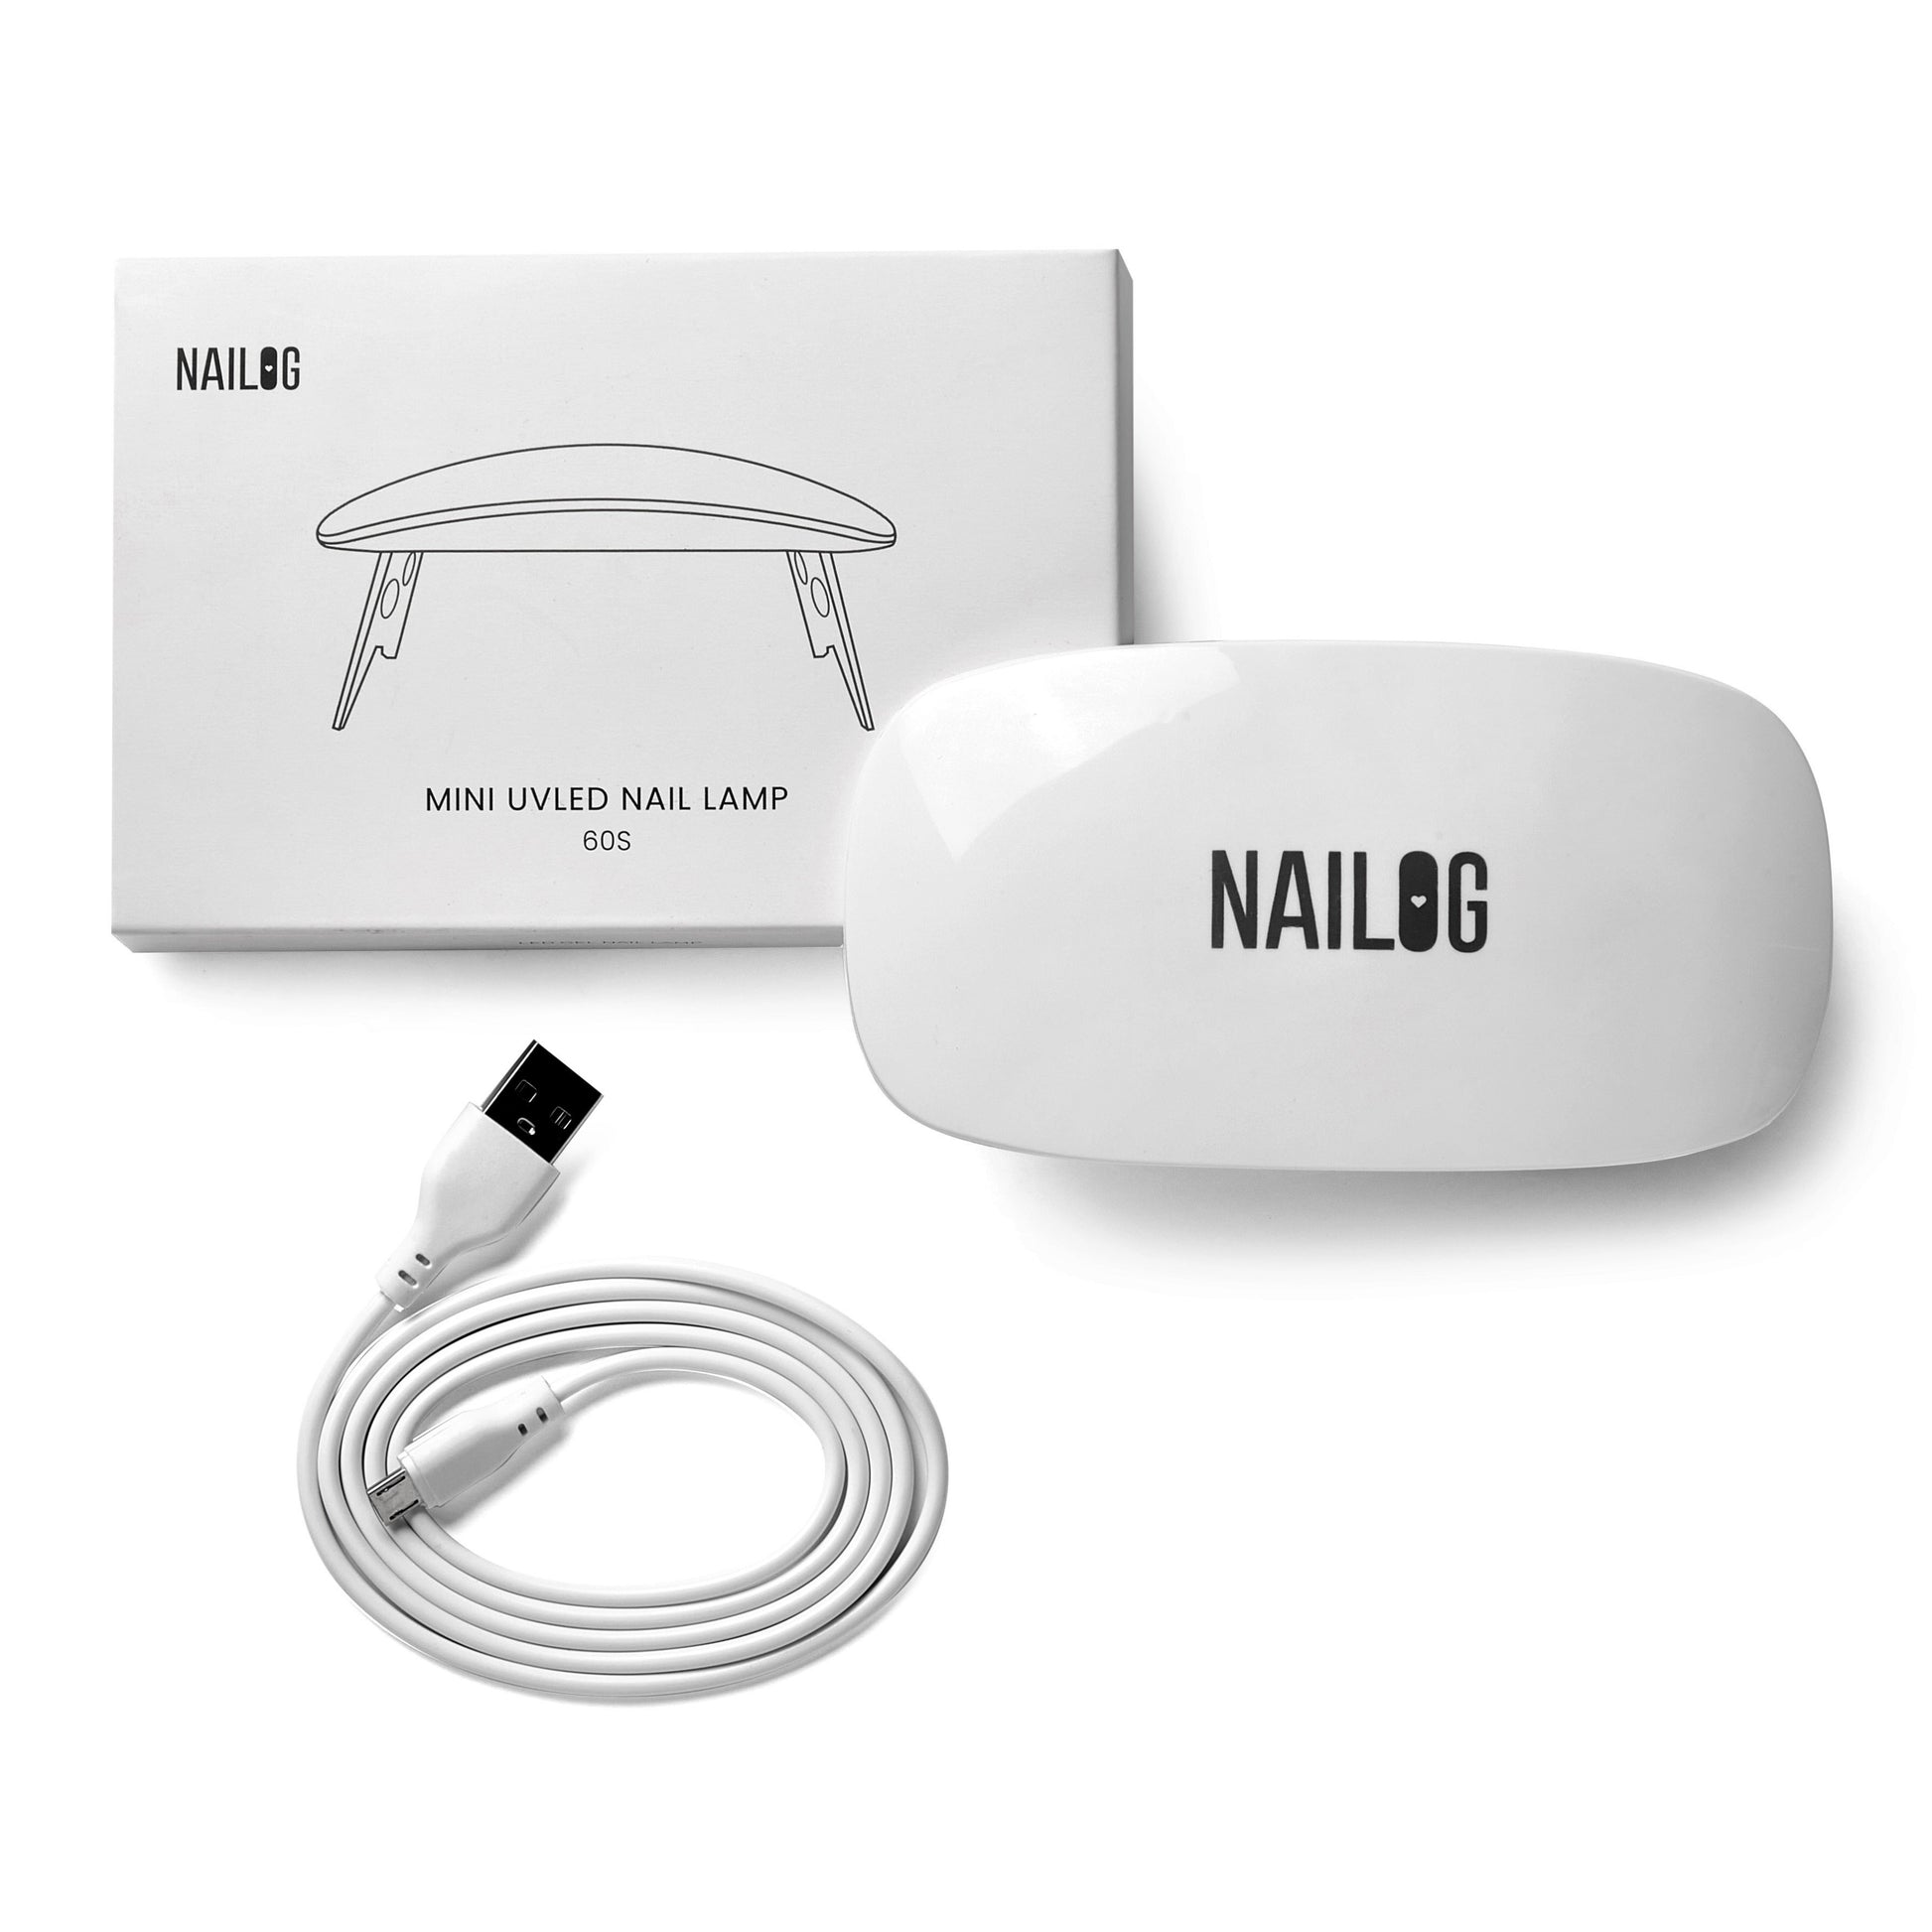 Nailog UV LED Nail Lamp, Mini 6W Light with USB Cable, Portable White